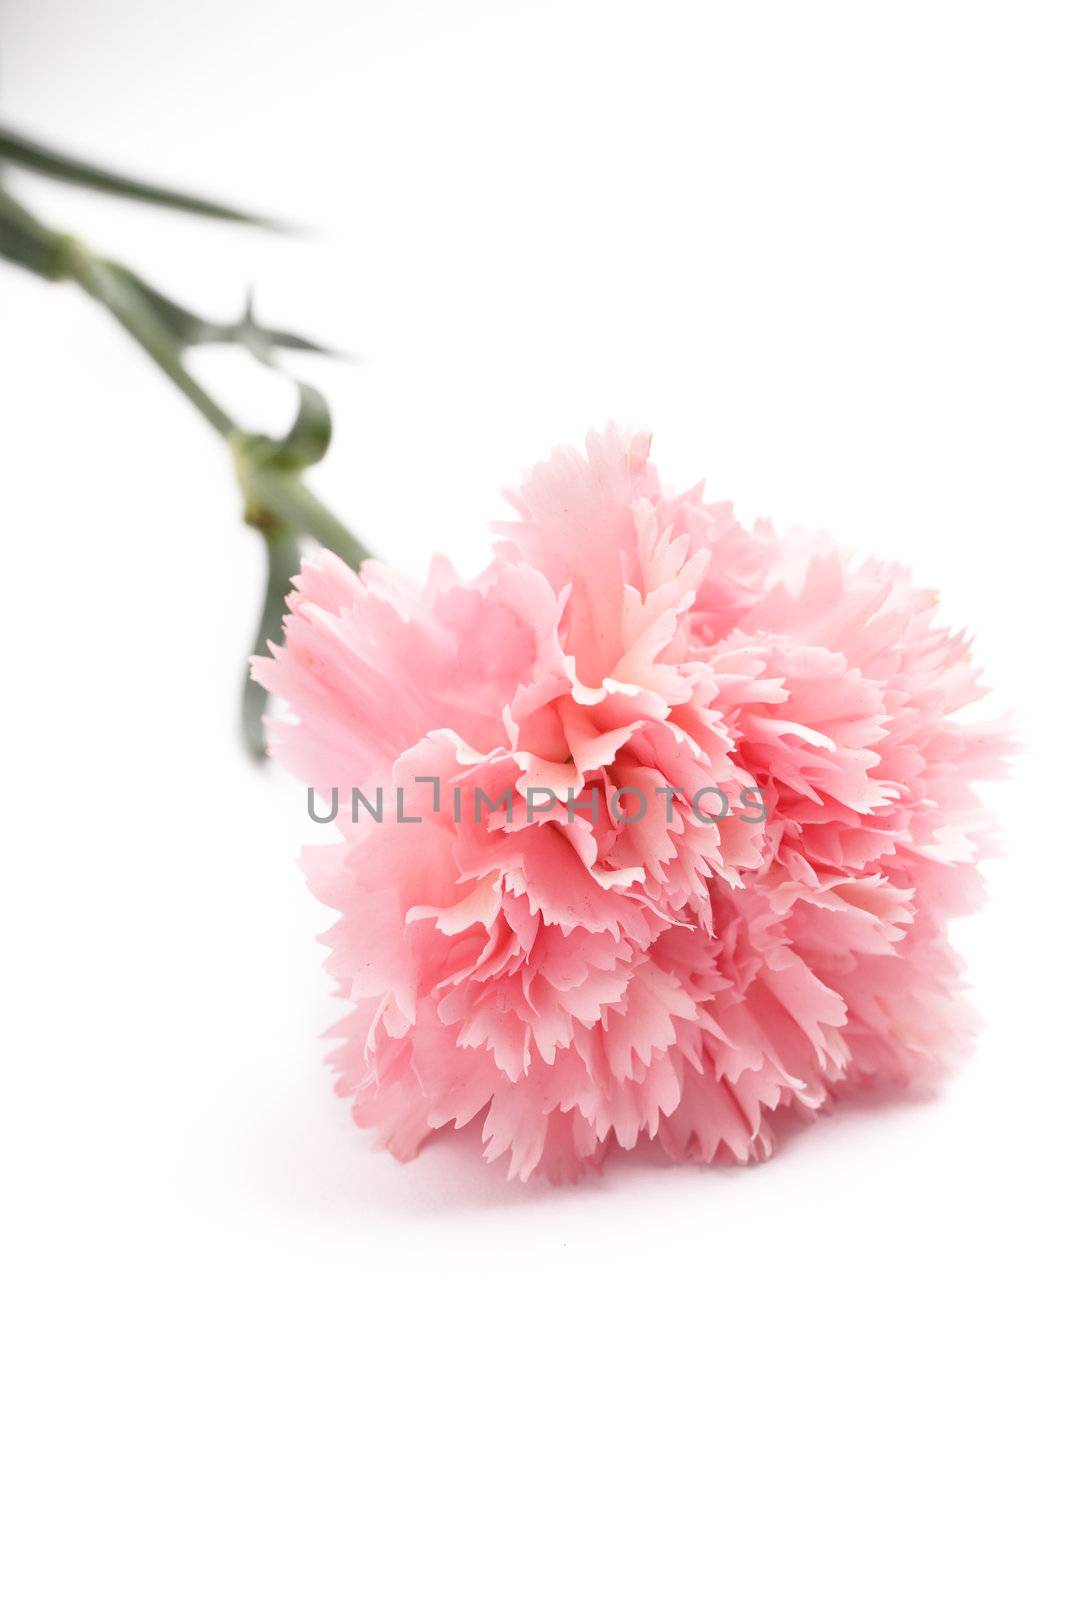 carnation, pink color